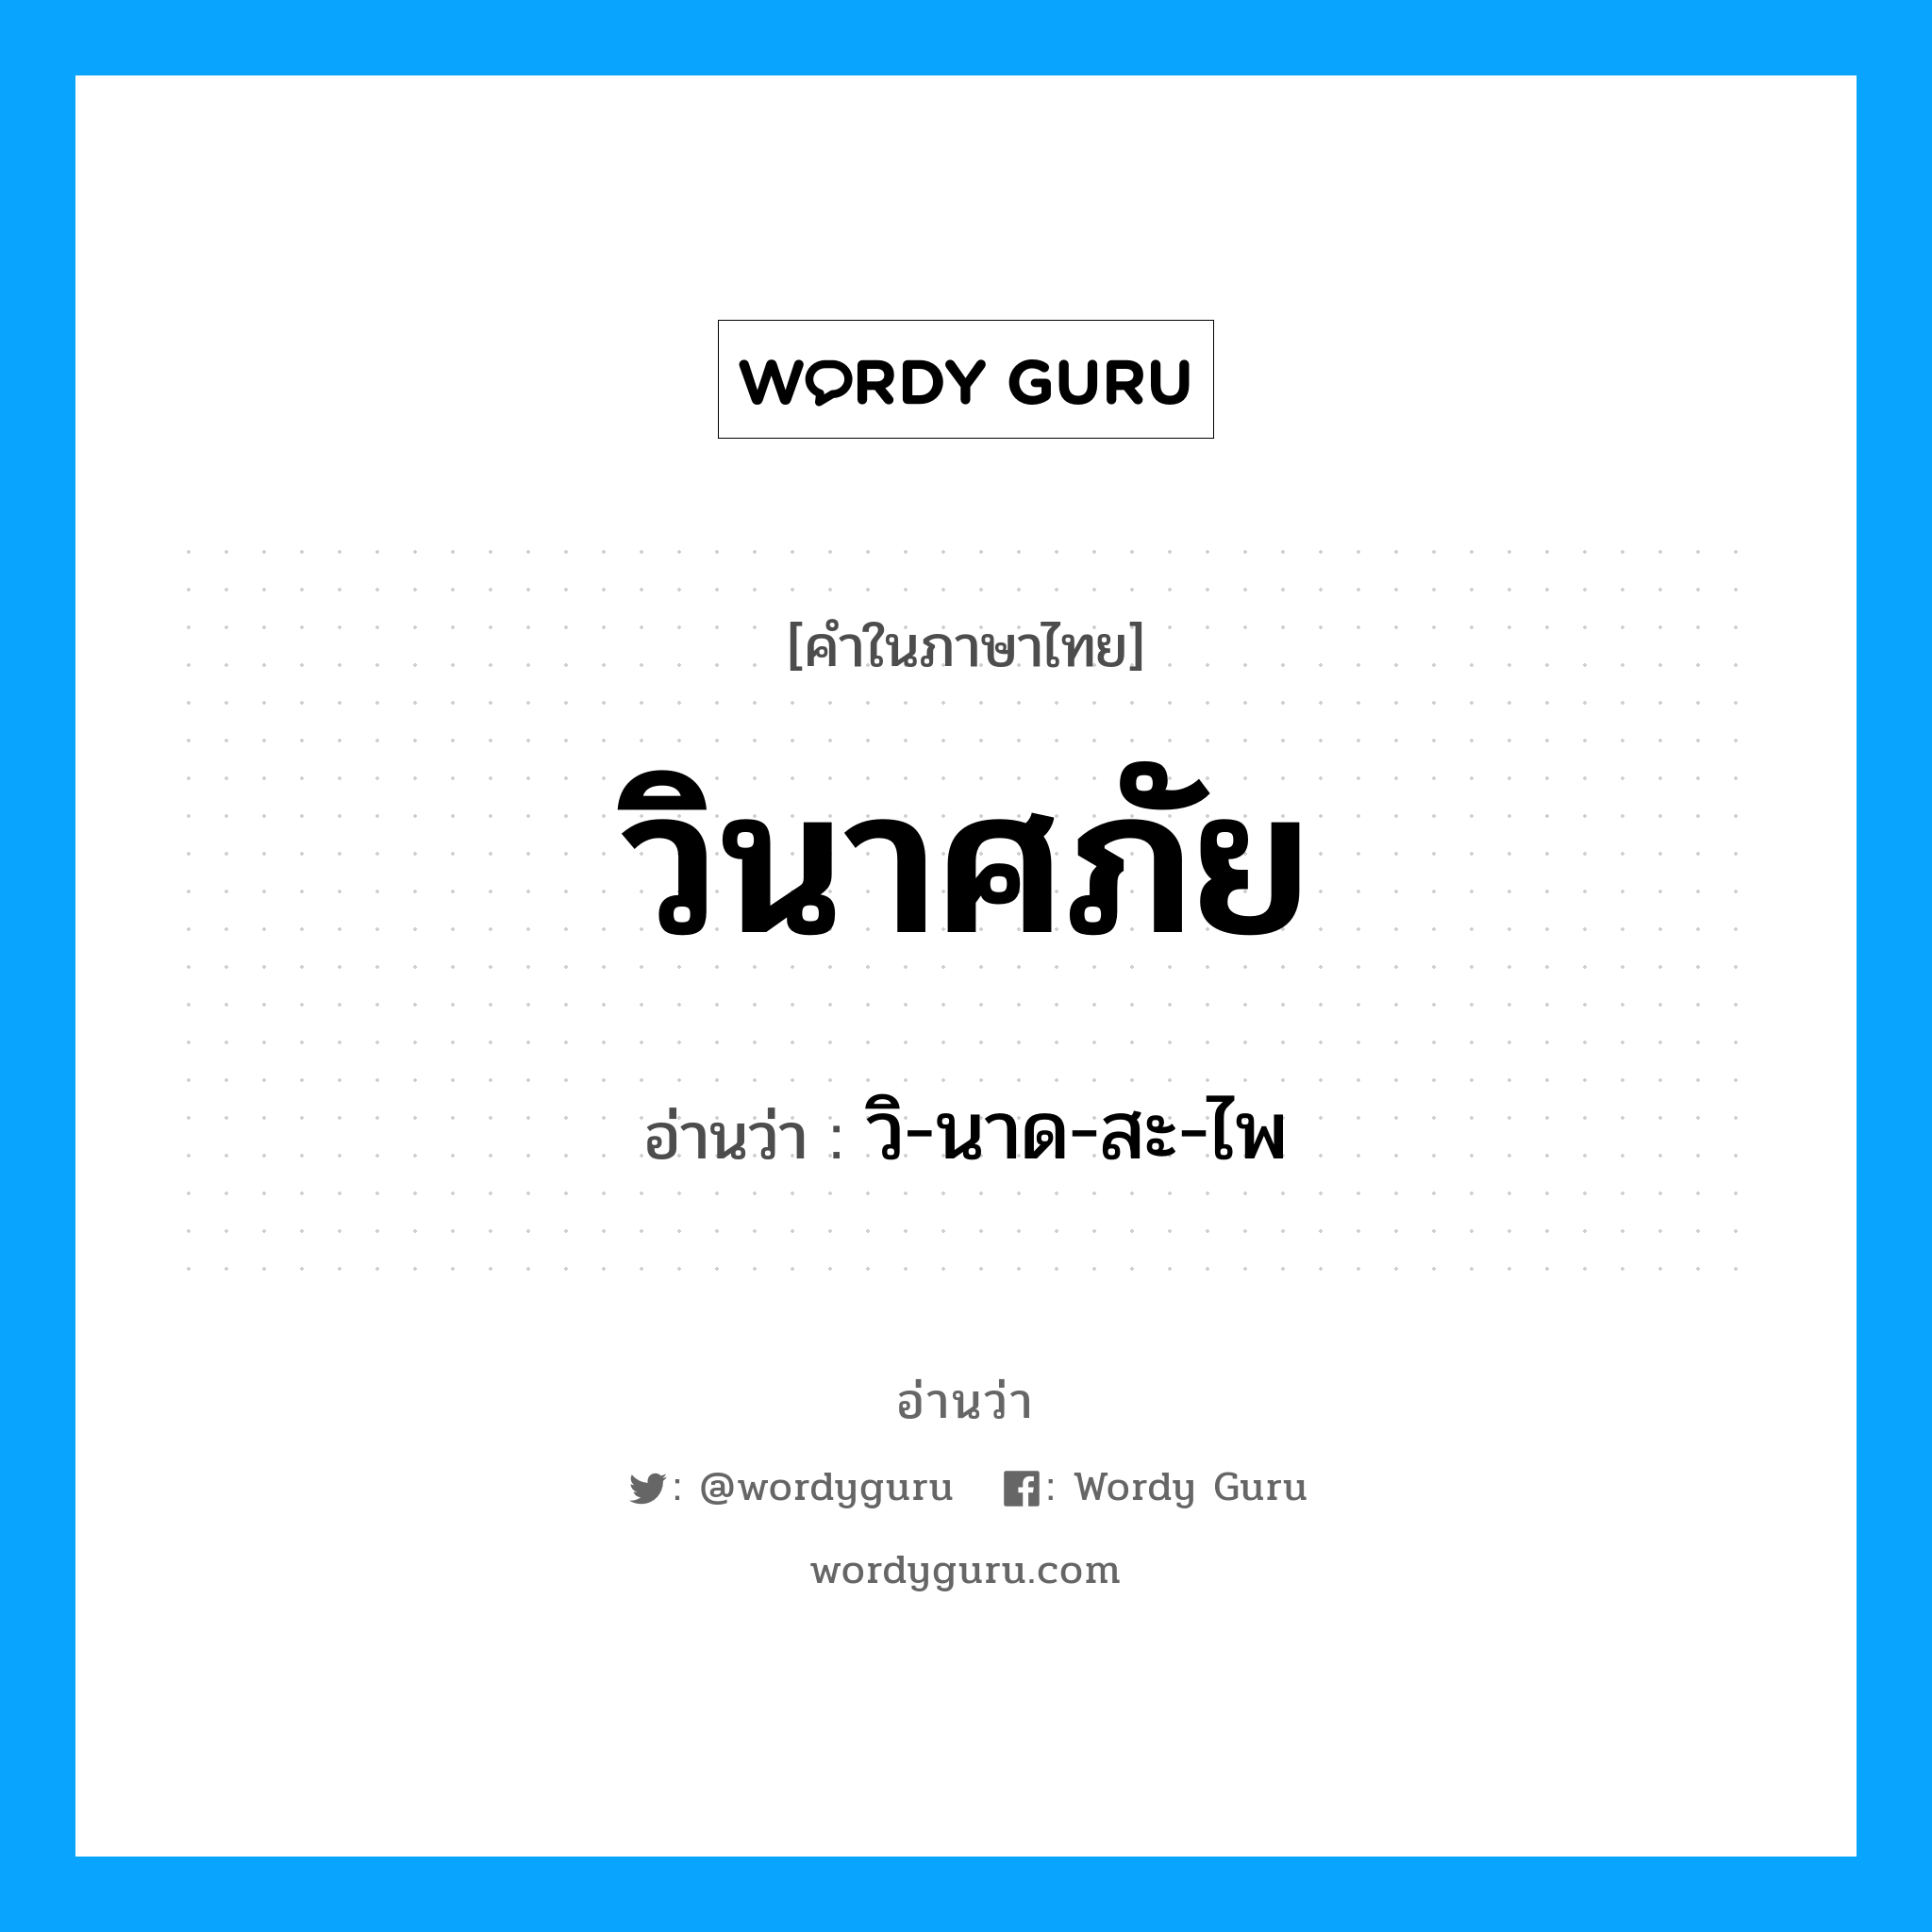 วิ-นาด-สะ-ไพ เป็นคำอ่านของคำไหน?, คำในภาษาไทย วิ-นาด-สะ-ไพ อ่านว่า วินาศภัย